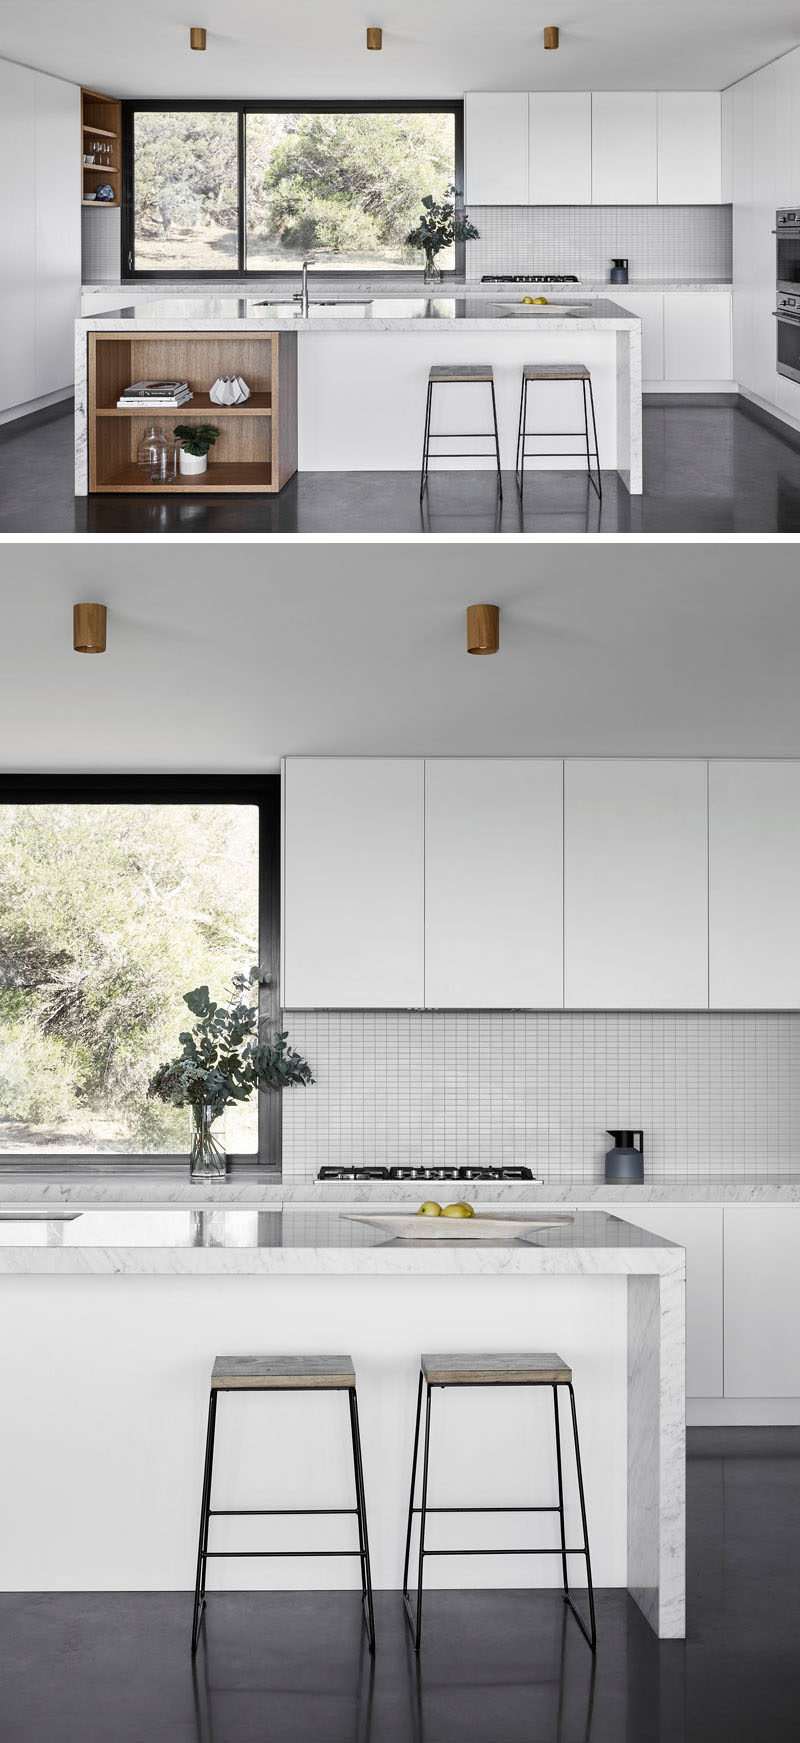  На этой кухне минималистичные белые шкафы сочетаются с деревянными стеллажами, которые резко контрастируют с темным полом и оконной рамой. # СовременнаяКухня # МинималистскаяКухня #KitchenDesign # БелаяКухня 